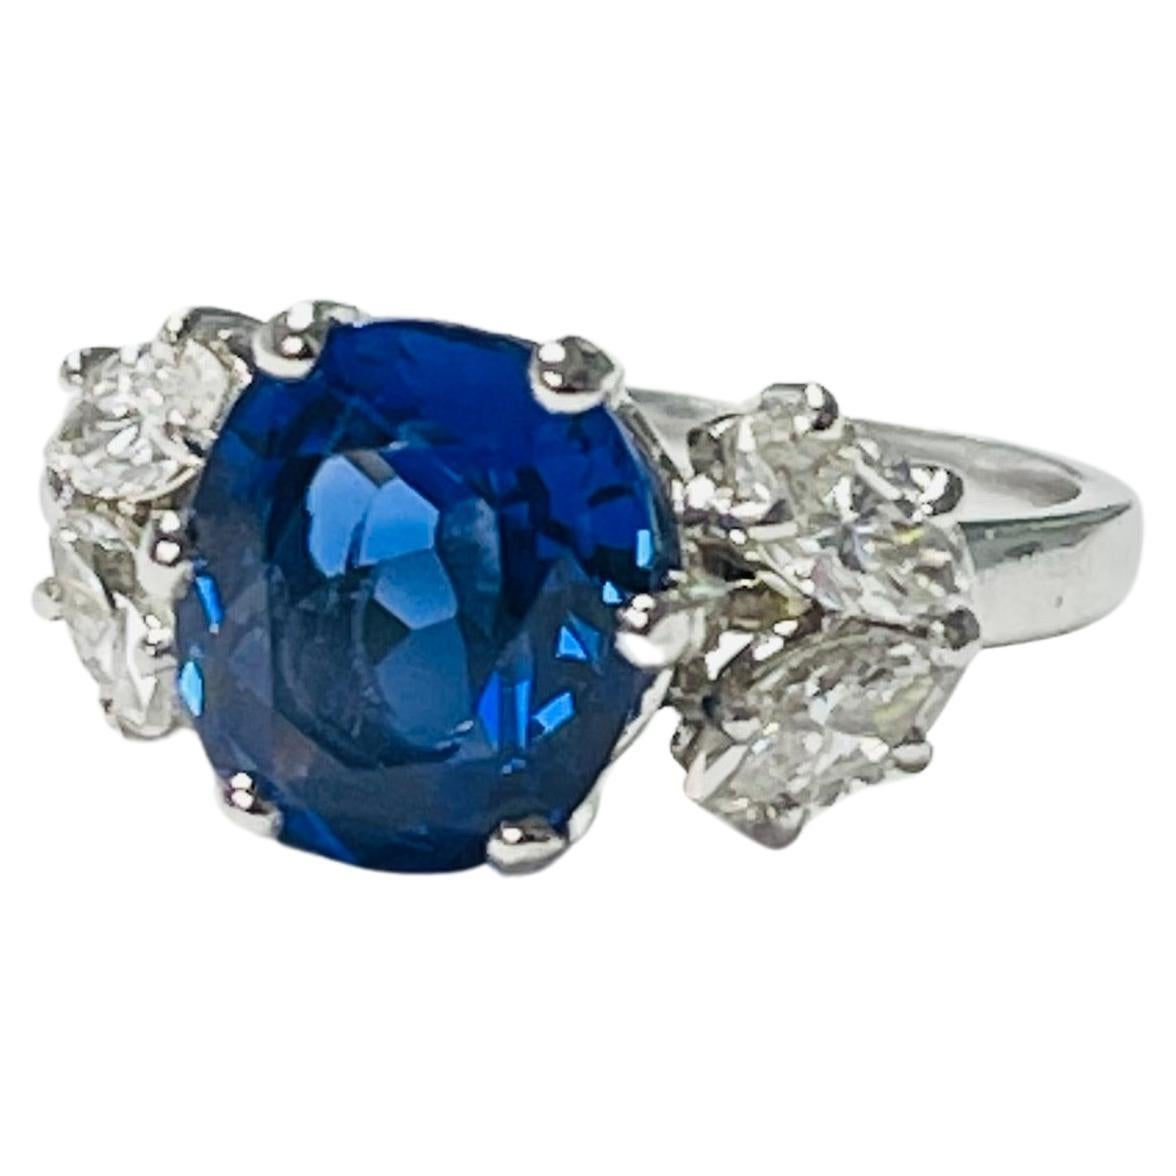 Blauer als Blau, samtiger natürlicher blauer Saphir und Diamant-Verlobungsring, wunderschön handgefertigt in Platin. SSEF-zertifiziert. 
Die Einzelheiten sind wie folgt: 
Gewicht des blauen Saphirs: 3,52 Karat 
Form : Ovaler Brillantschliff